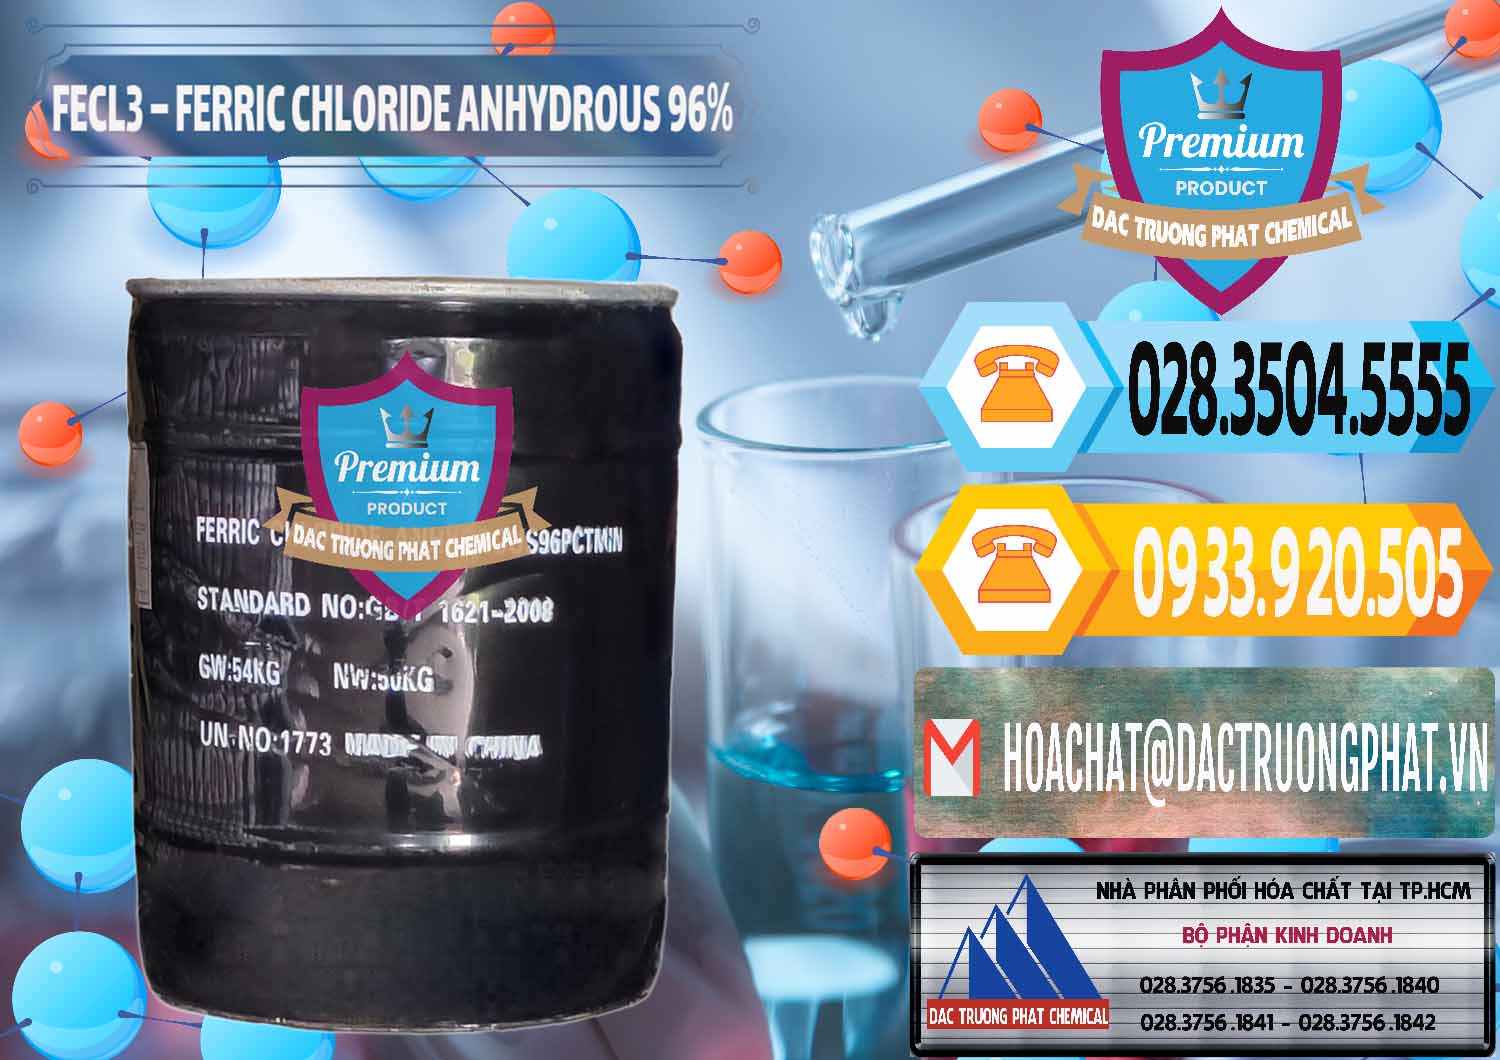 Nơi chuyên bán và cung cấp FECL3 – Ferric Chloride Anhydrous 96% Trung Quốc China - 0065 - Đơn vị nhập khẩu & phân phối hóa chất tại TP.HCM - hoachattayrua.net